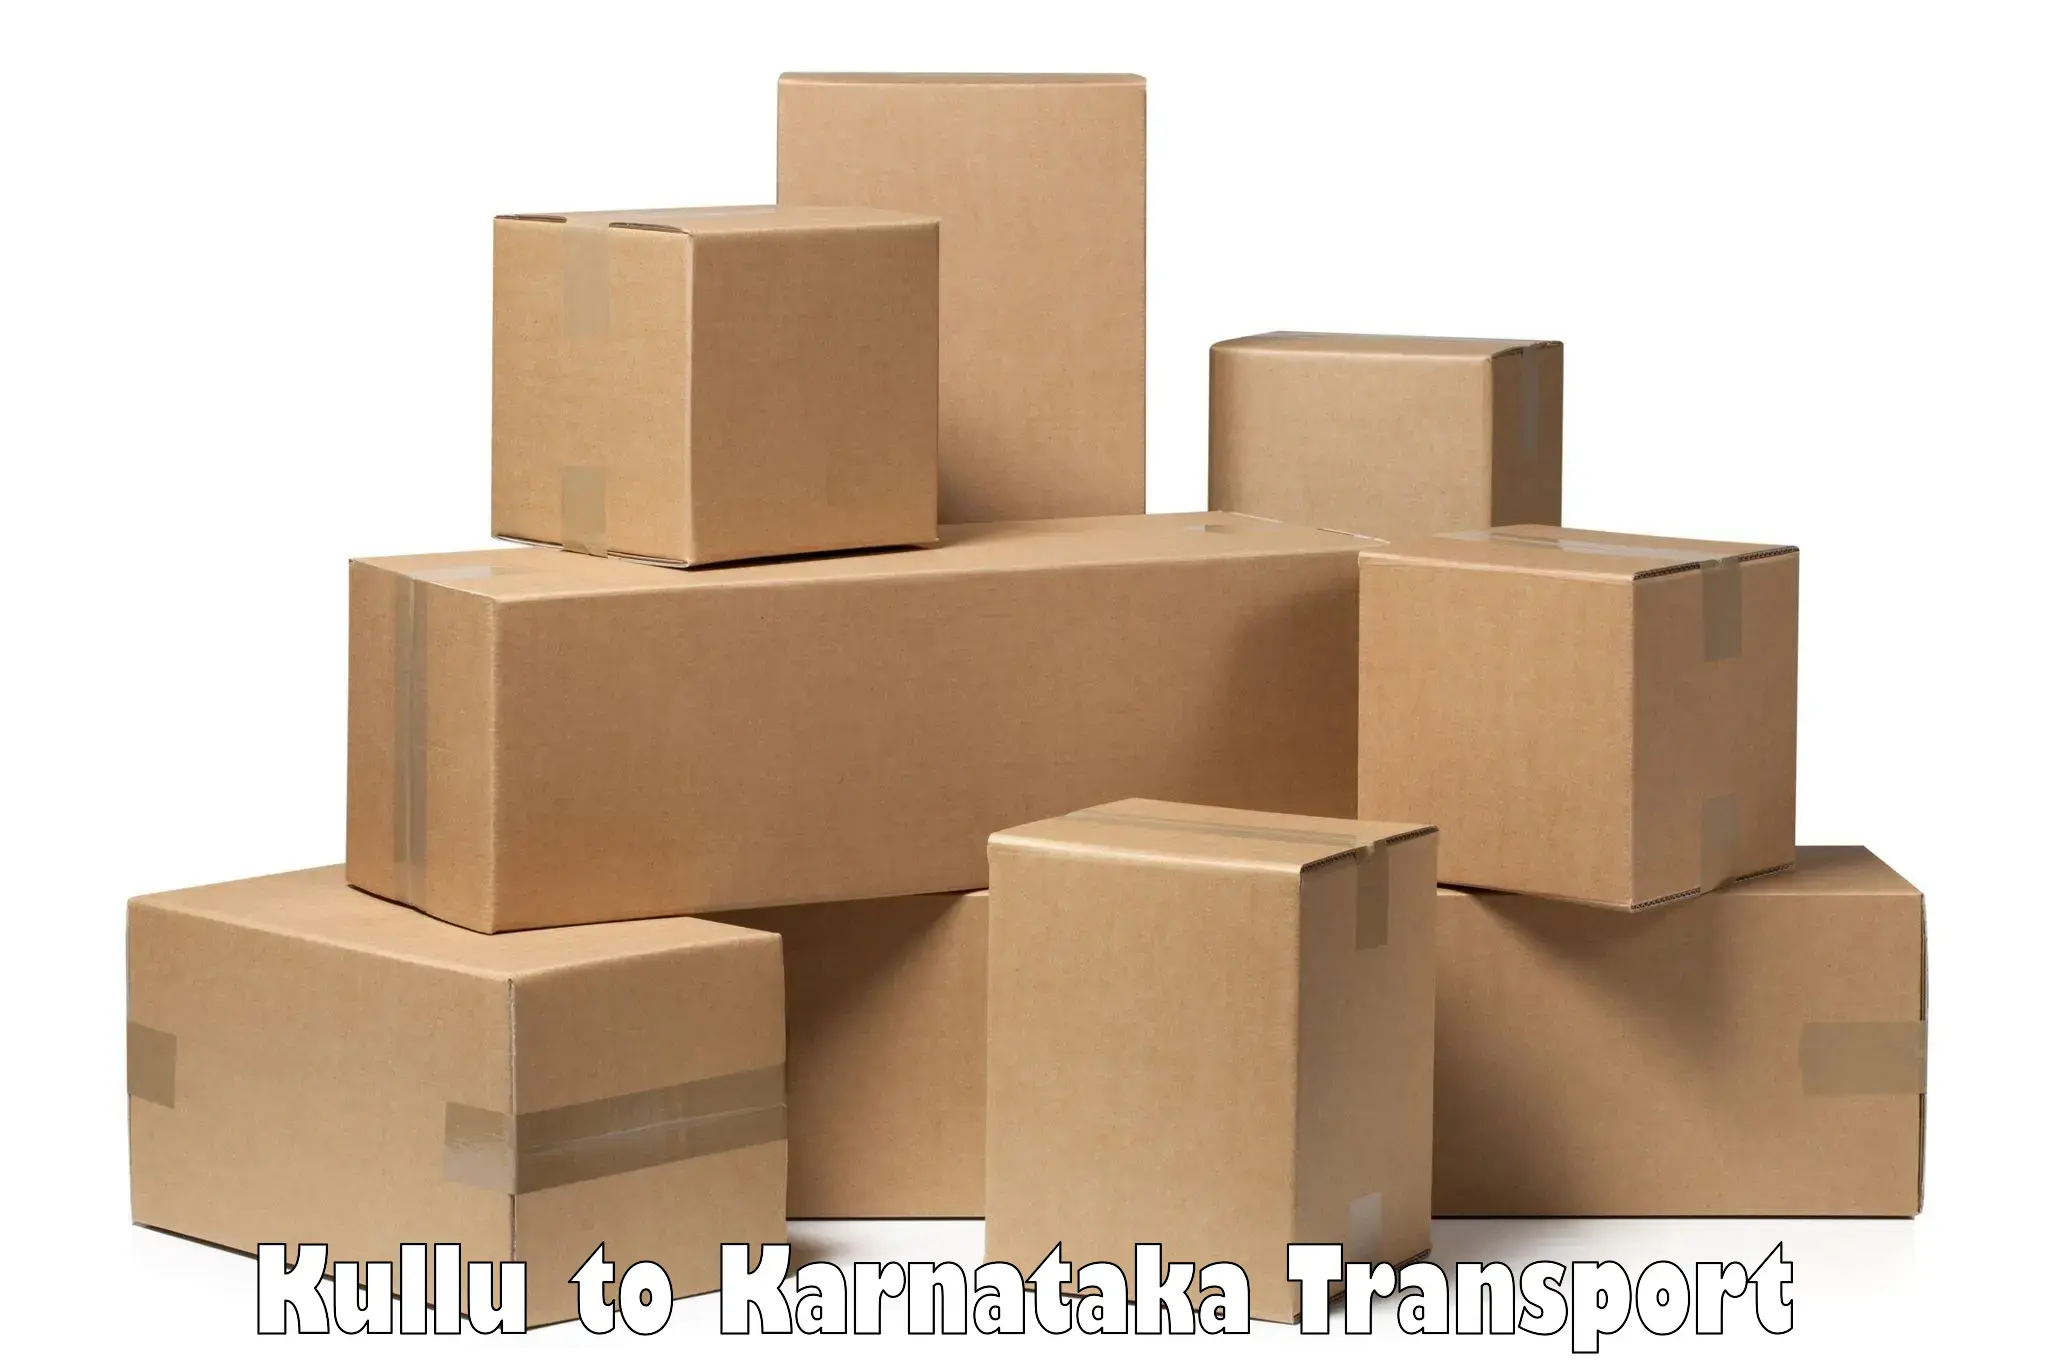 Commercial transport service Kullu to Krishnarajanagara